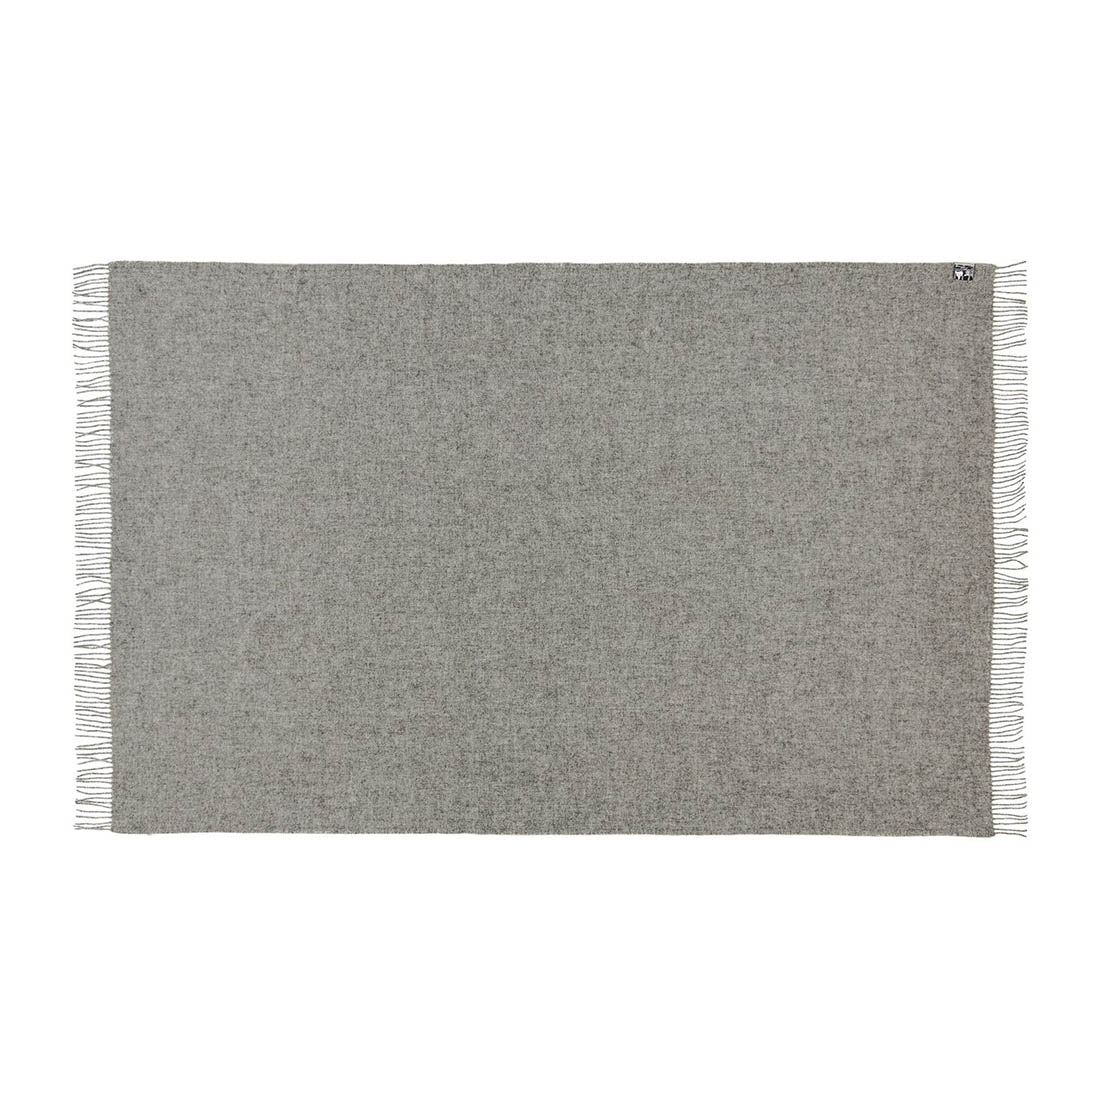 Wool blanket "Samsø" Nordic Grey